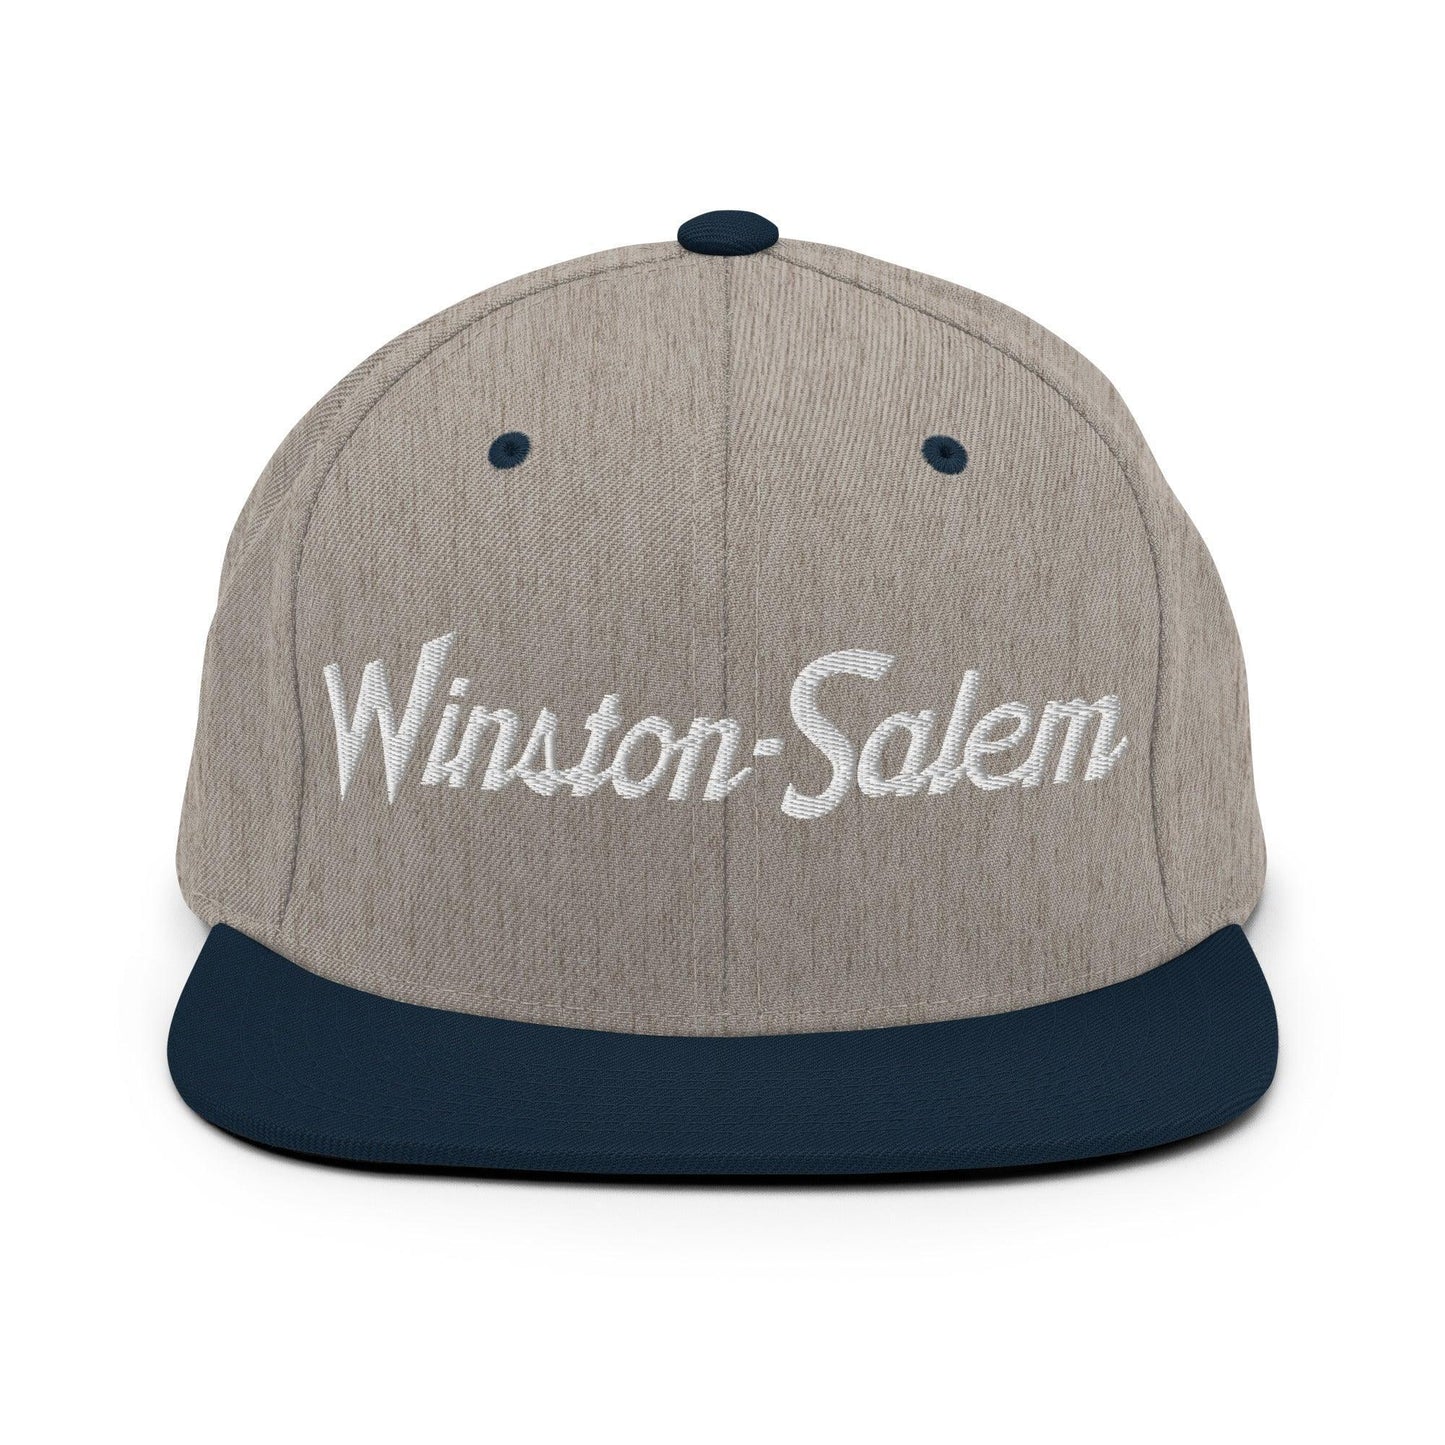 Winston-Salem Script Snapback Hat Heather Grey/ Navy